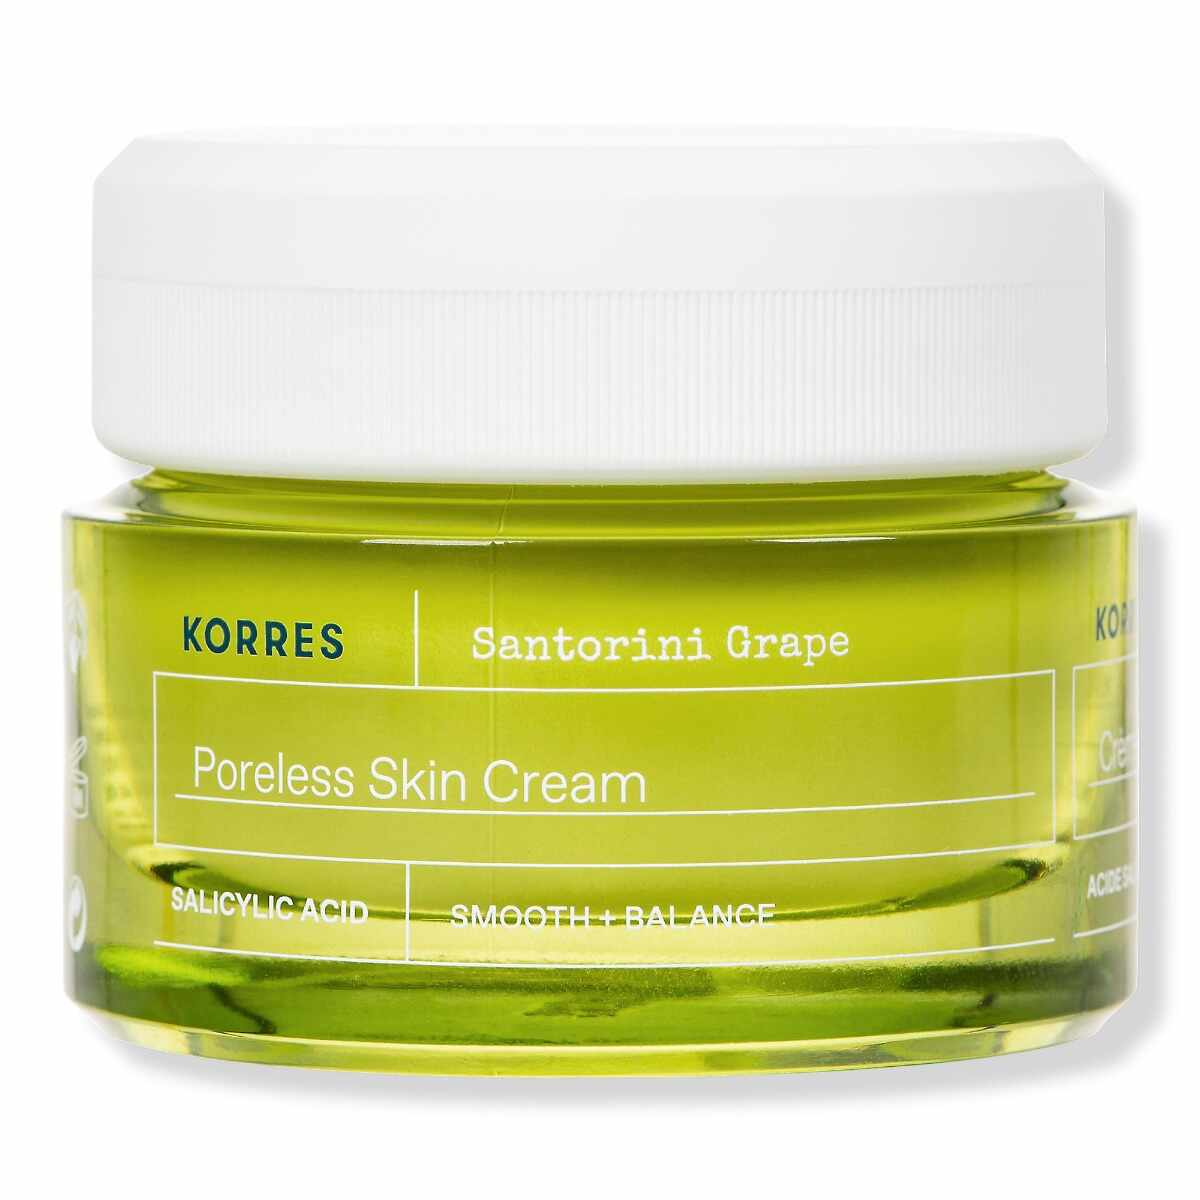 Crema pentru estomparea porilor Porless Skin Cream Santorini Grape, 40ml, Korres